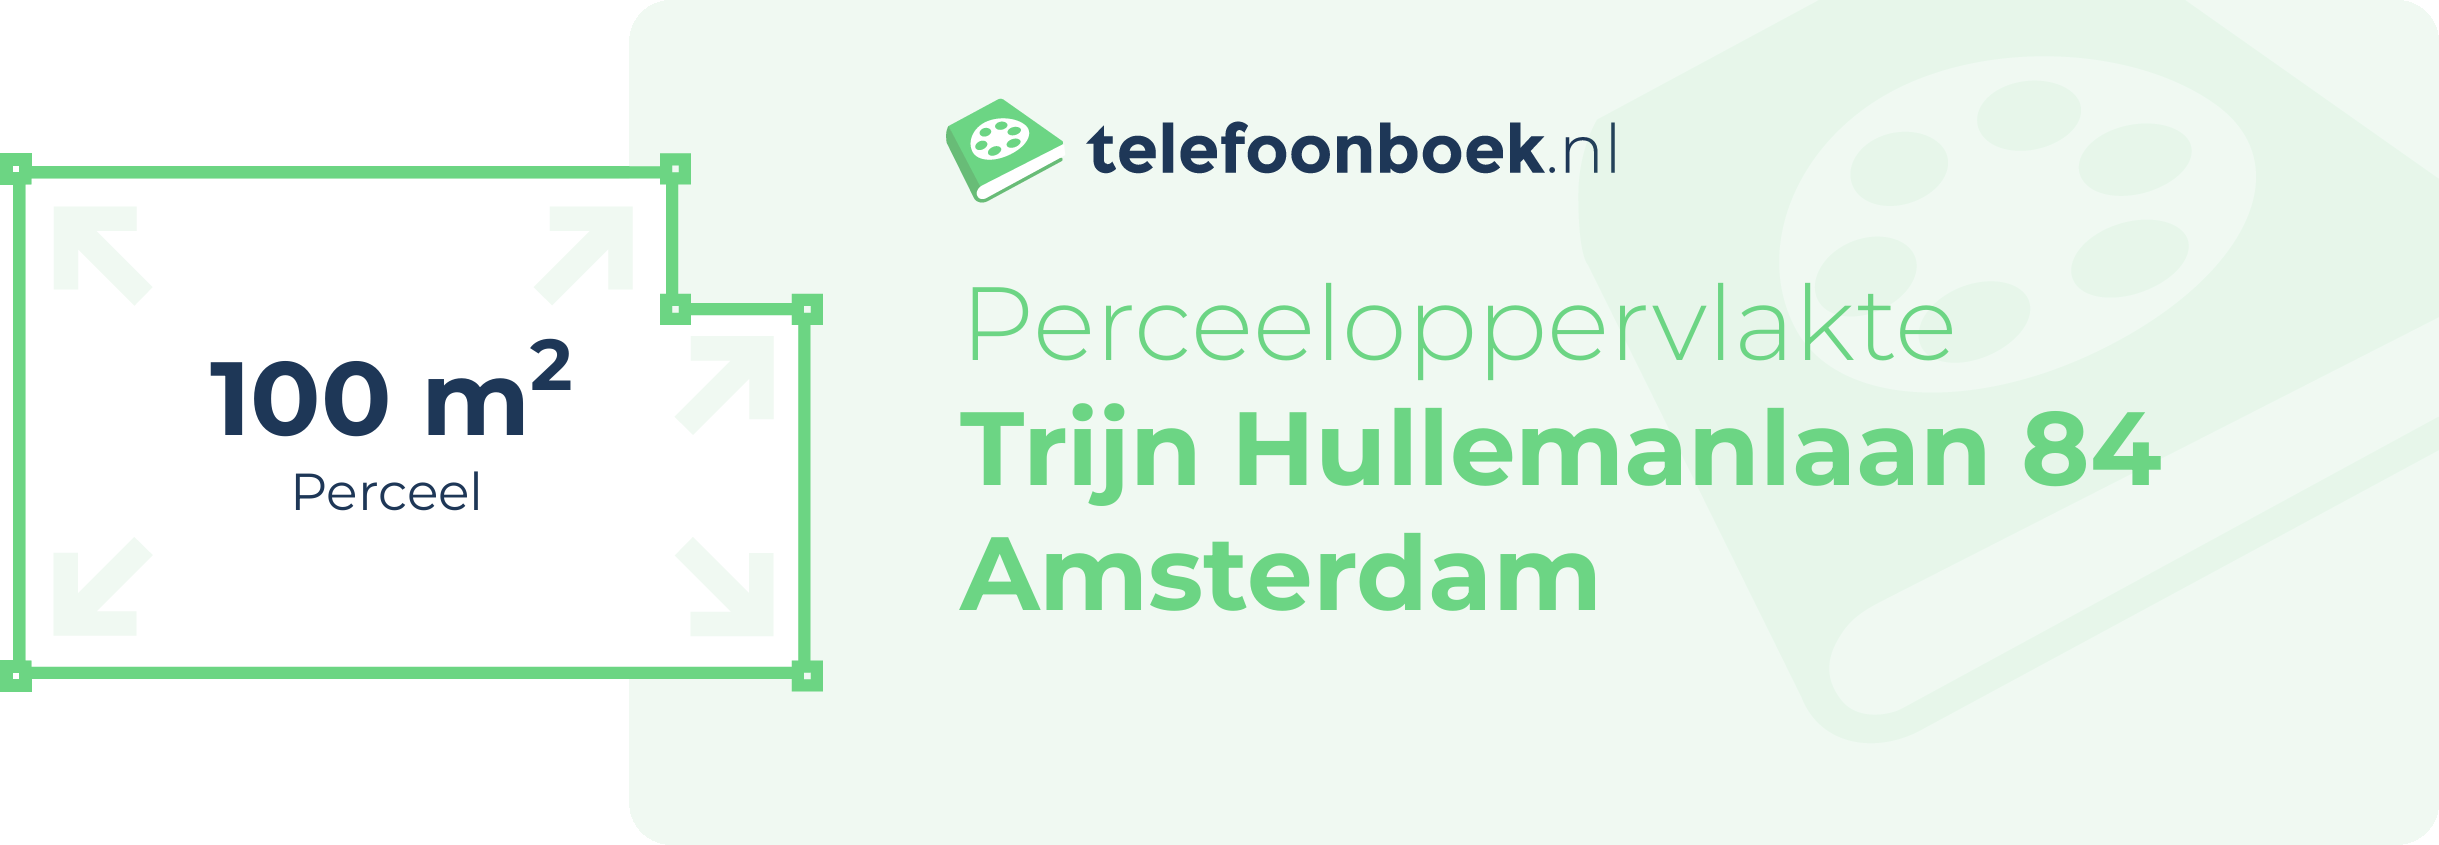 Perceeloppervlakte Trijn Hullemanlaan 84 Amsterdam